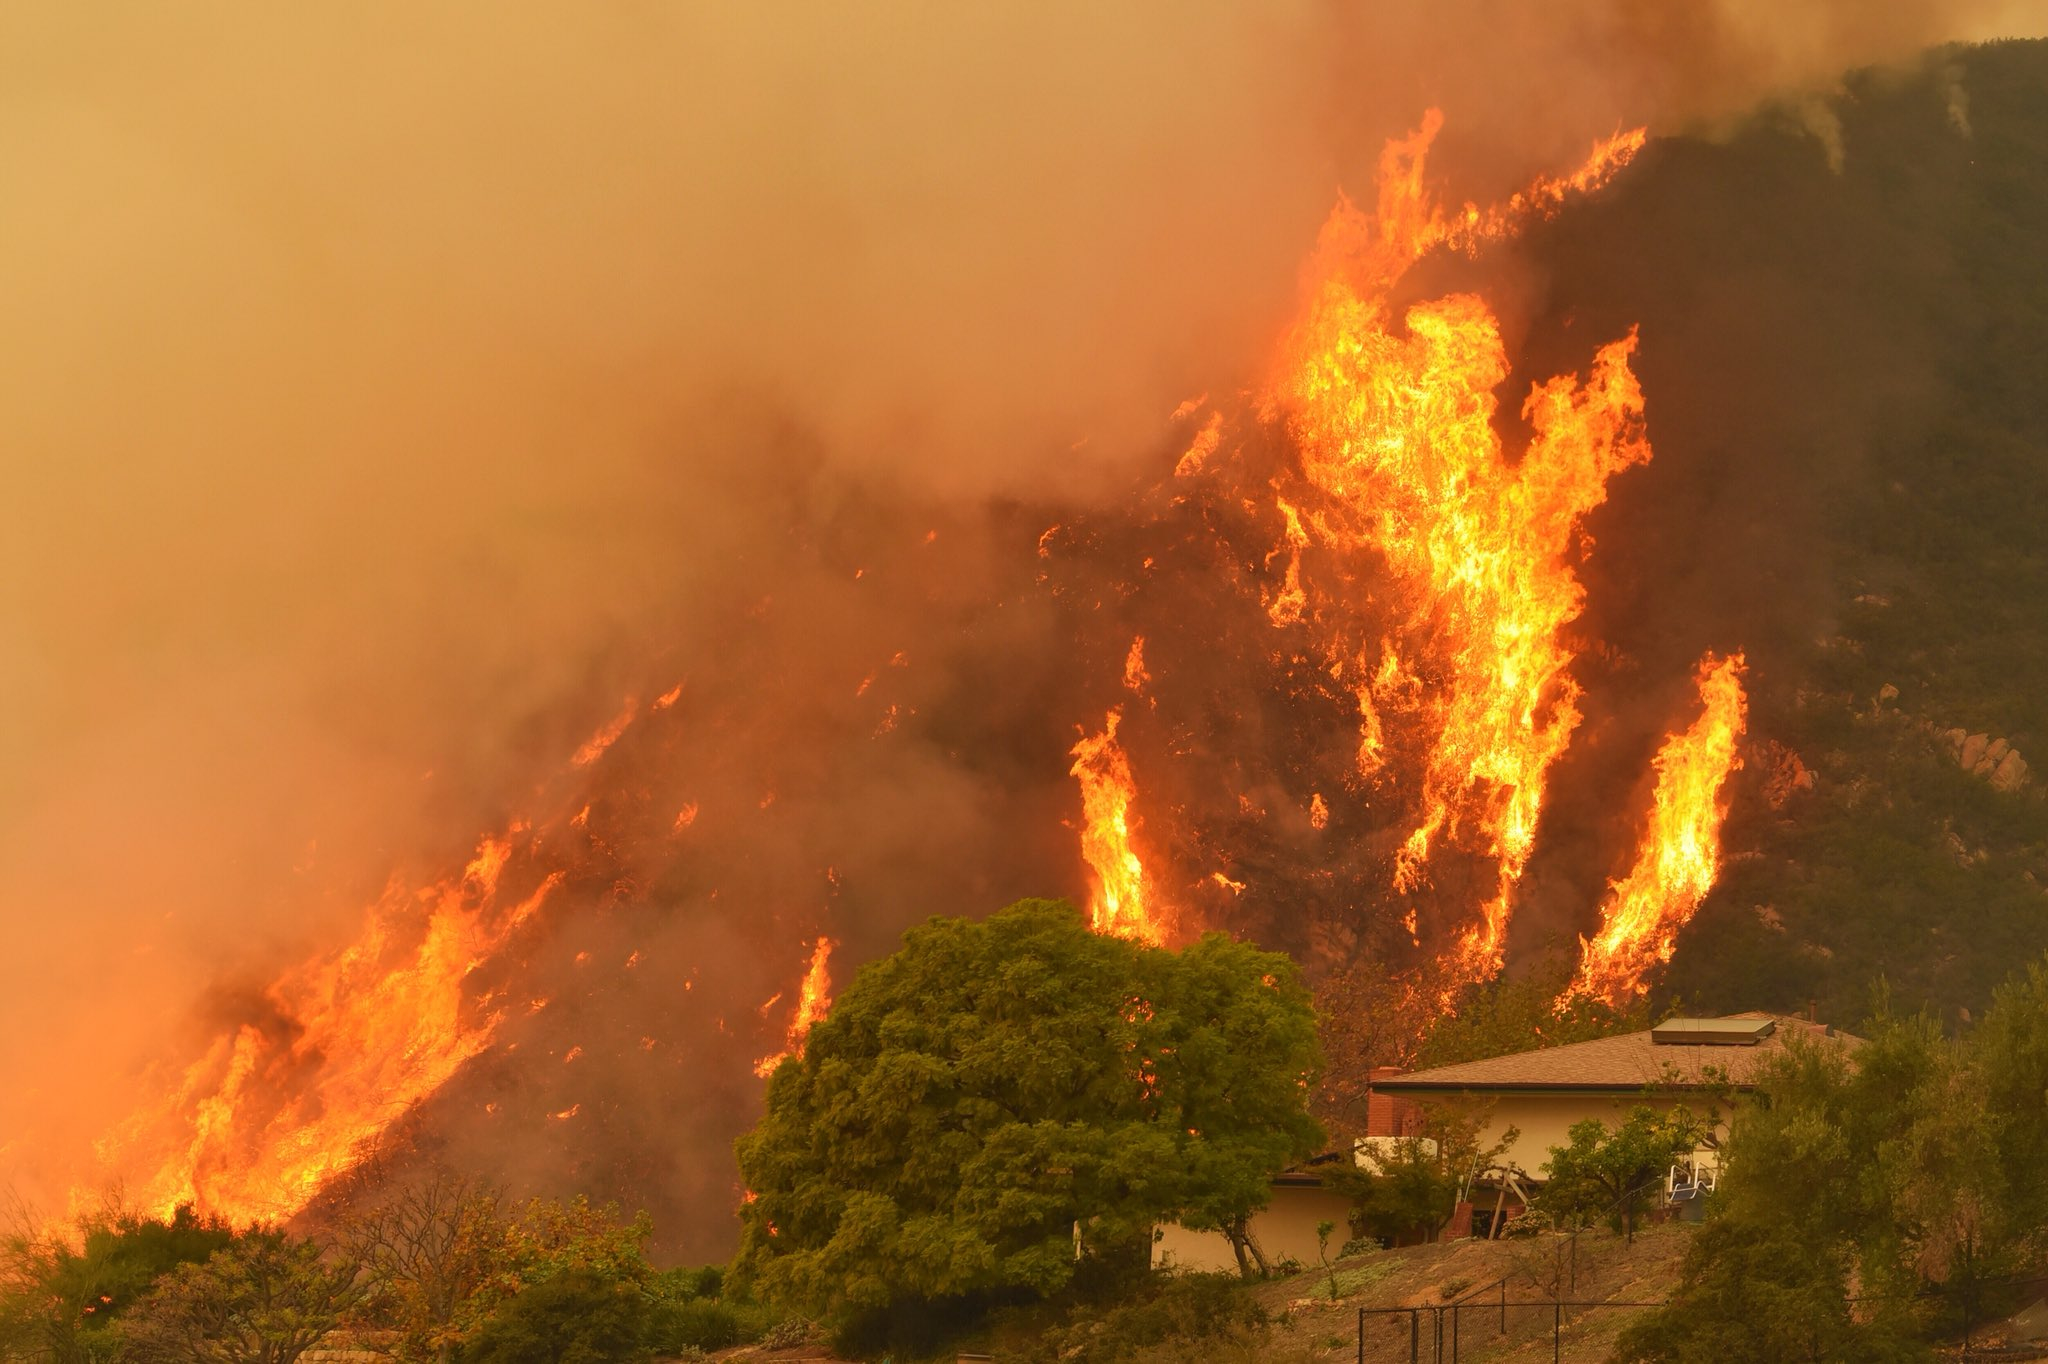 Fuerte viento atiza incendio forestal en California, el tercero mayor registrado